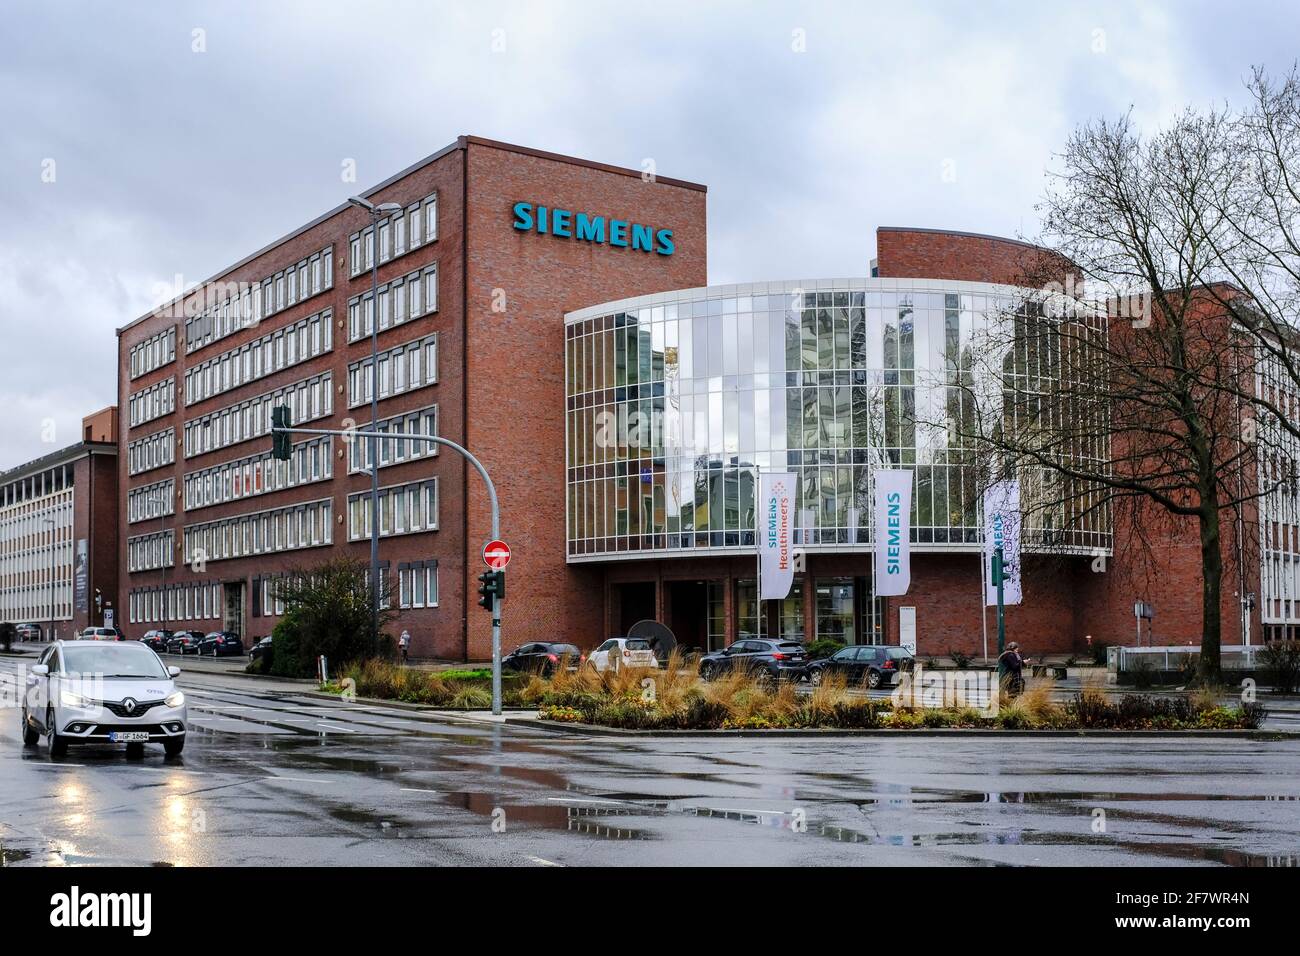 03.02.2021, Essen, Nordrhein-Westfalen, Deutschland - dunkle Wolken ueber der Siemens Niederlassung Ruhr in Essen Stock Photo